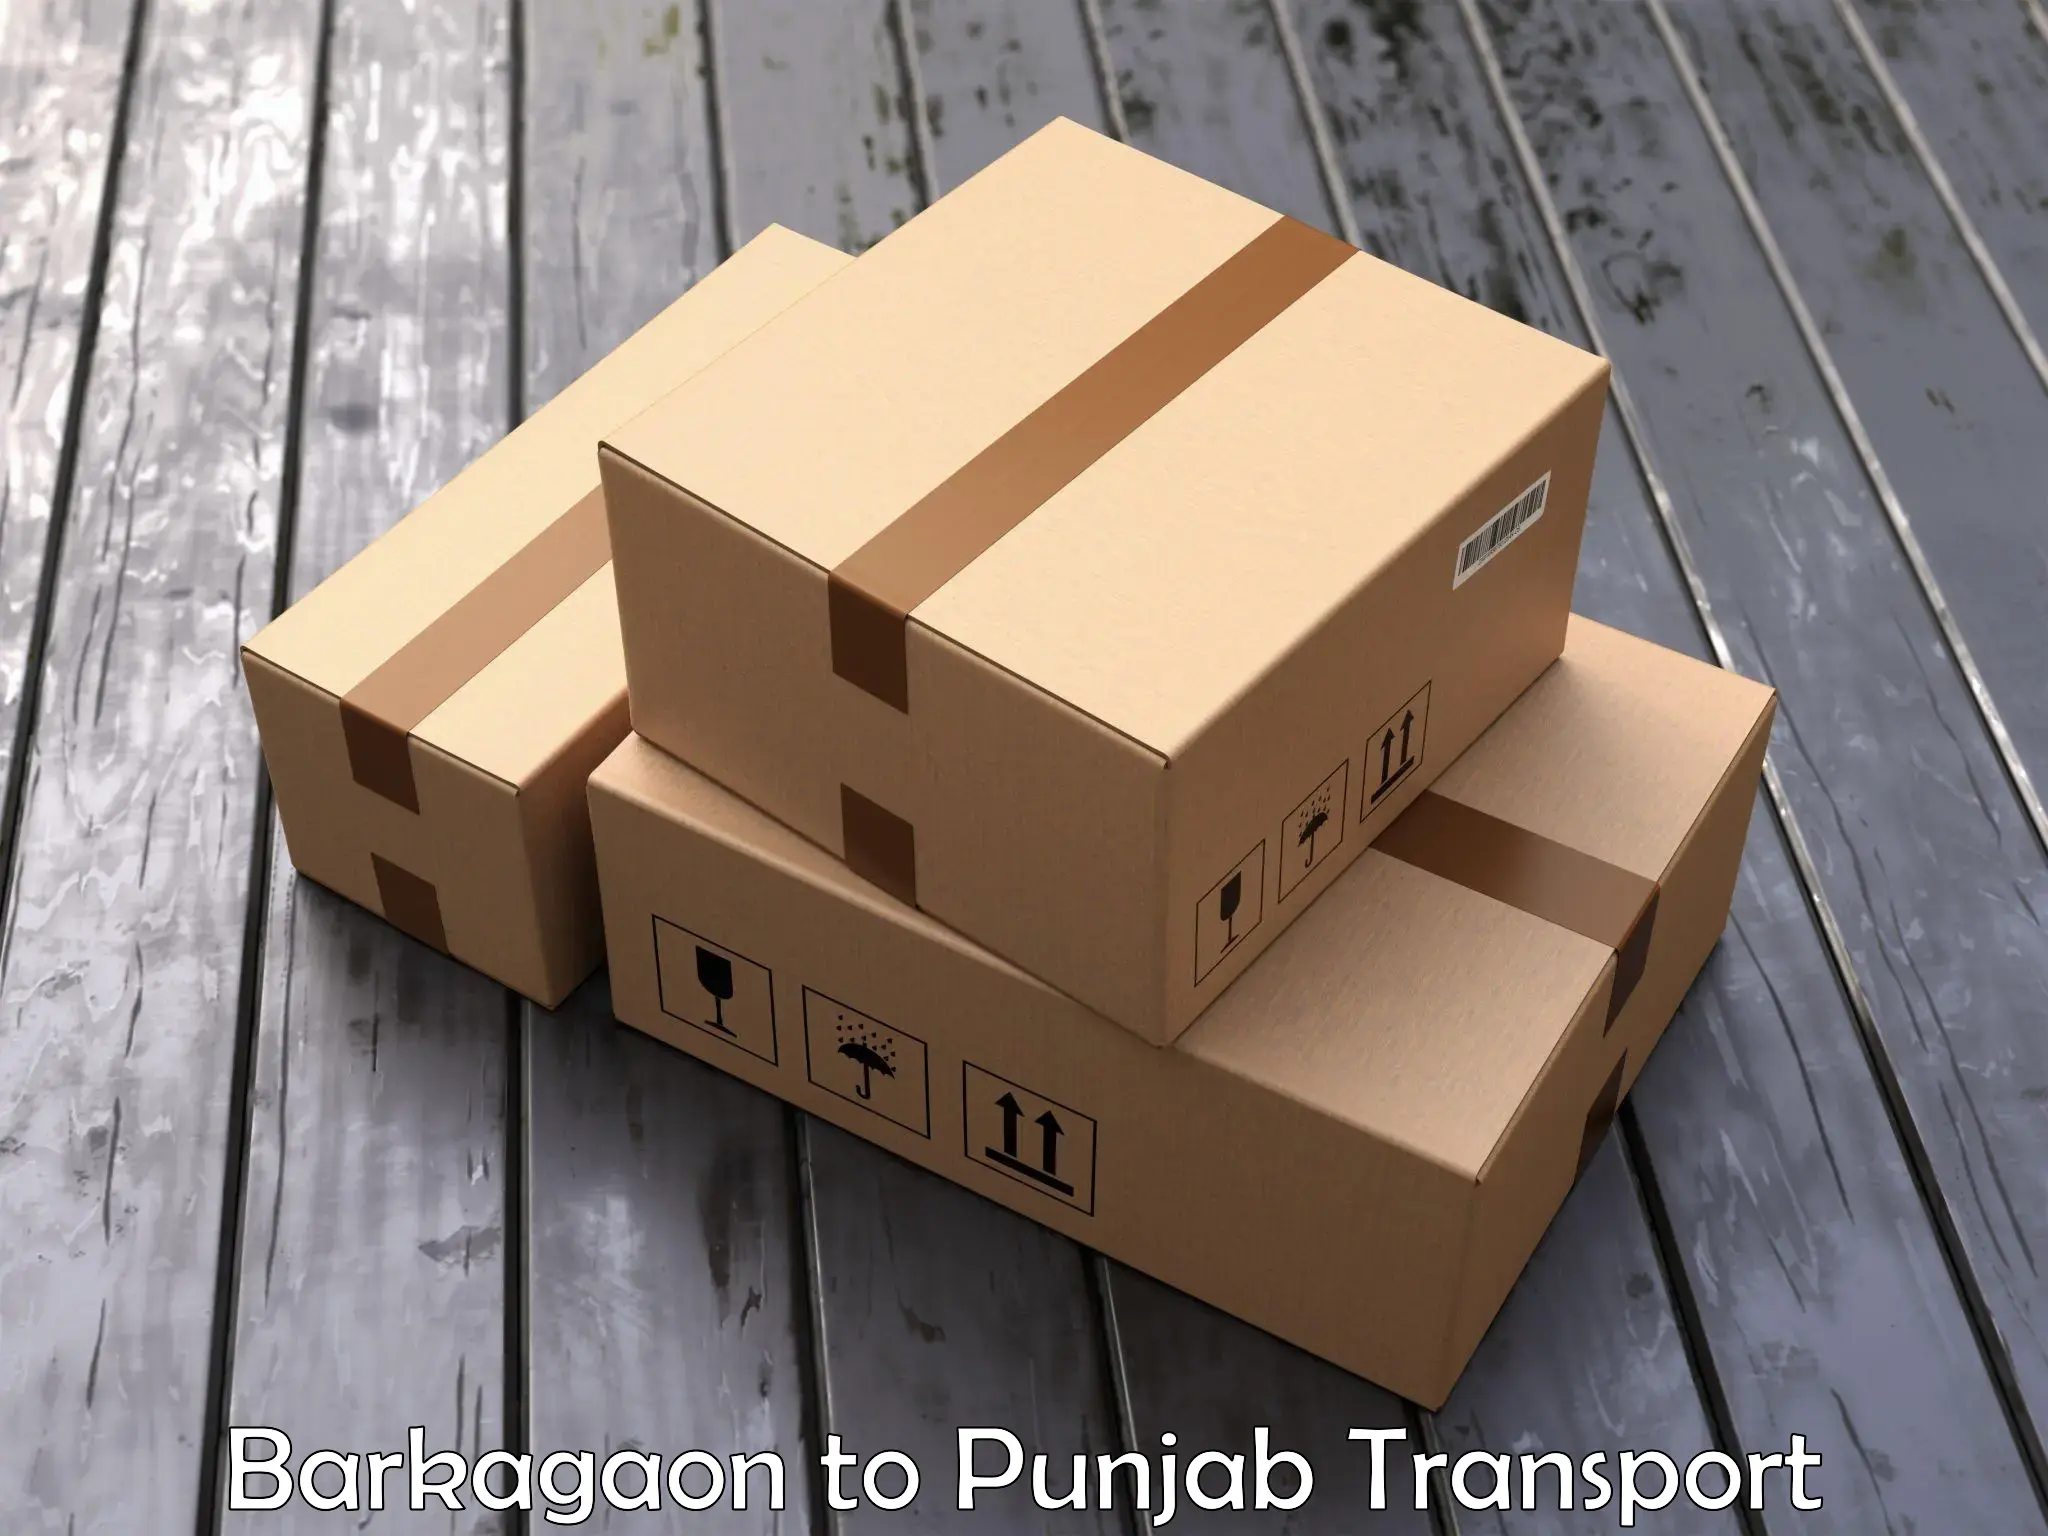 Bike shipping service Barkagaon to Punjab